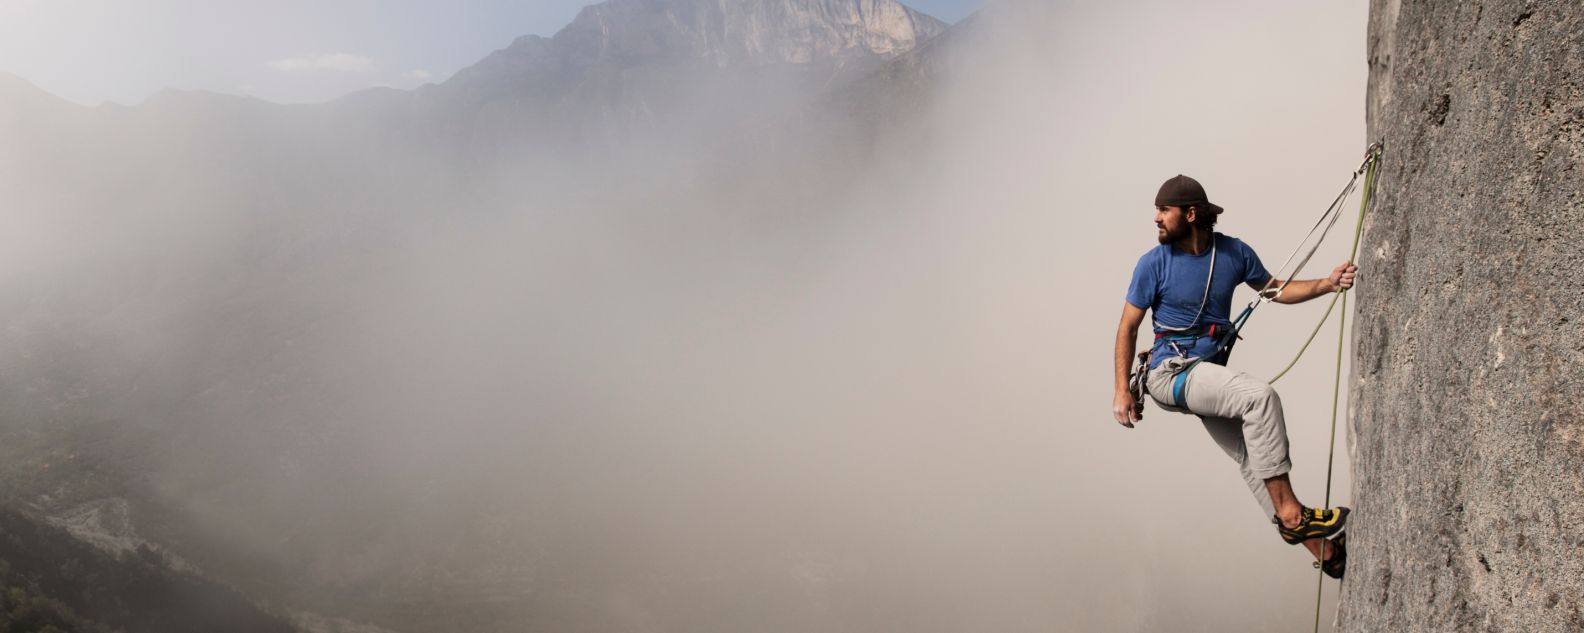 Alpinista escalando uma parede rochosa entre as nuvens